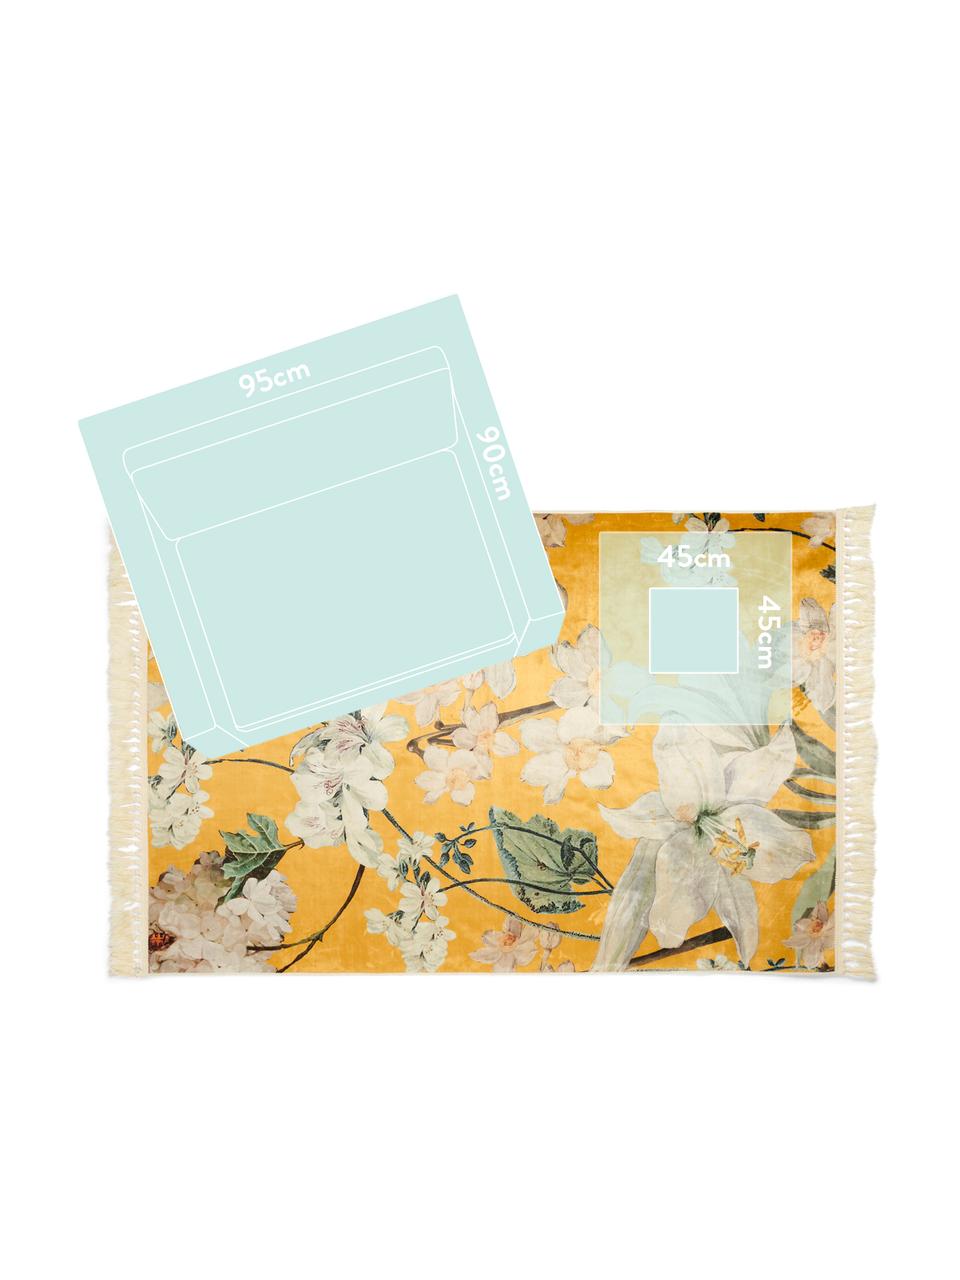 Teppich Rosalee mit Blumenmuster, 60% Polyester, 30% thermoplastisches Polyurethan, 10% Baumwolle, Senfgelb, Mehrfarbig, B 180 x L 240 cm (Größe M)